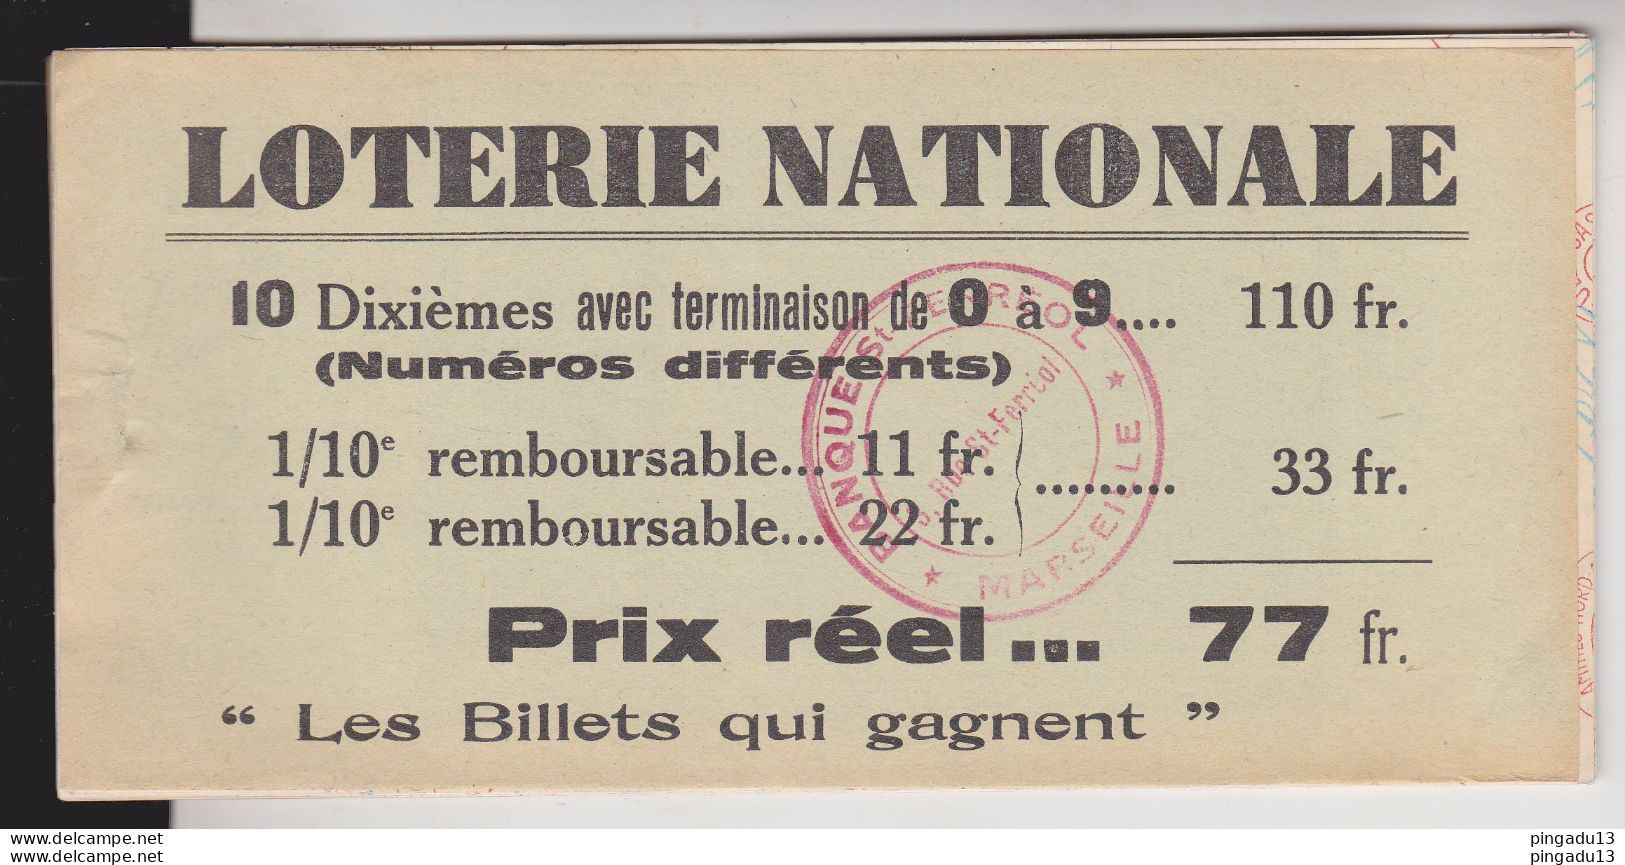 Fixe France Loterie Nationale Carnet De 8 Billets 1940 5 ème Tranche Gueules Cassées Très Bon état - Billets De Loterie